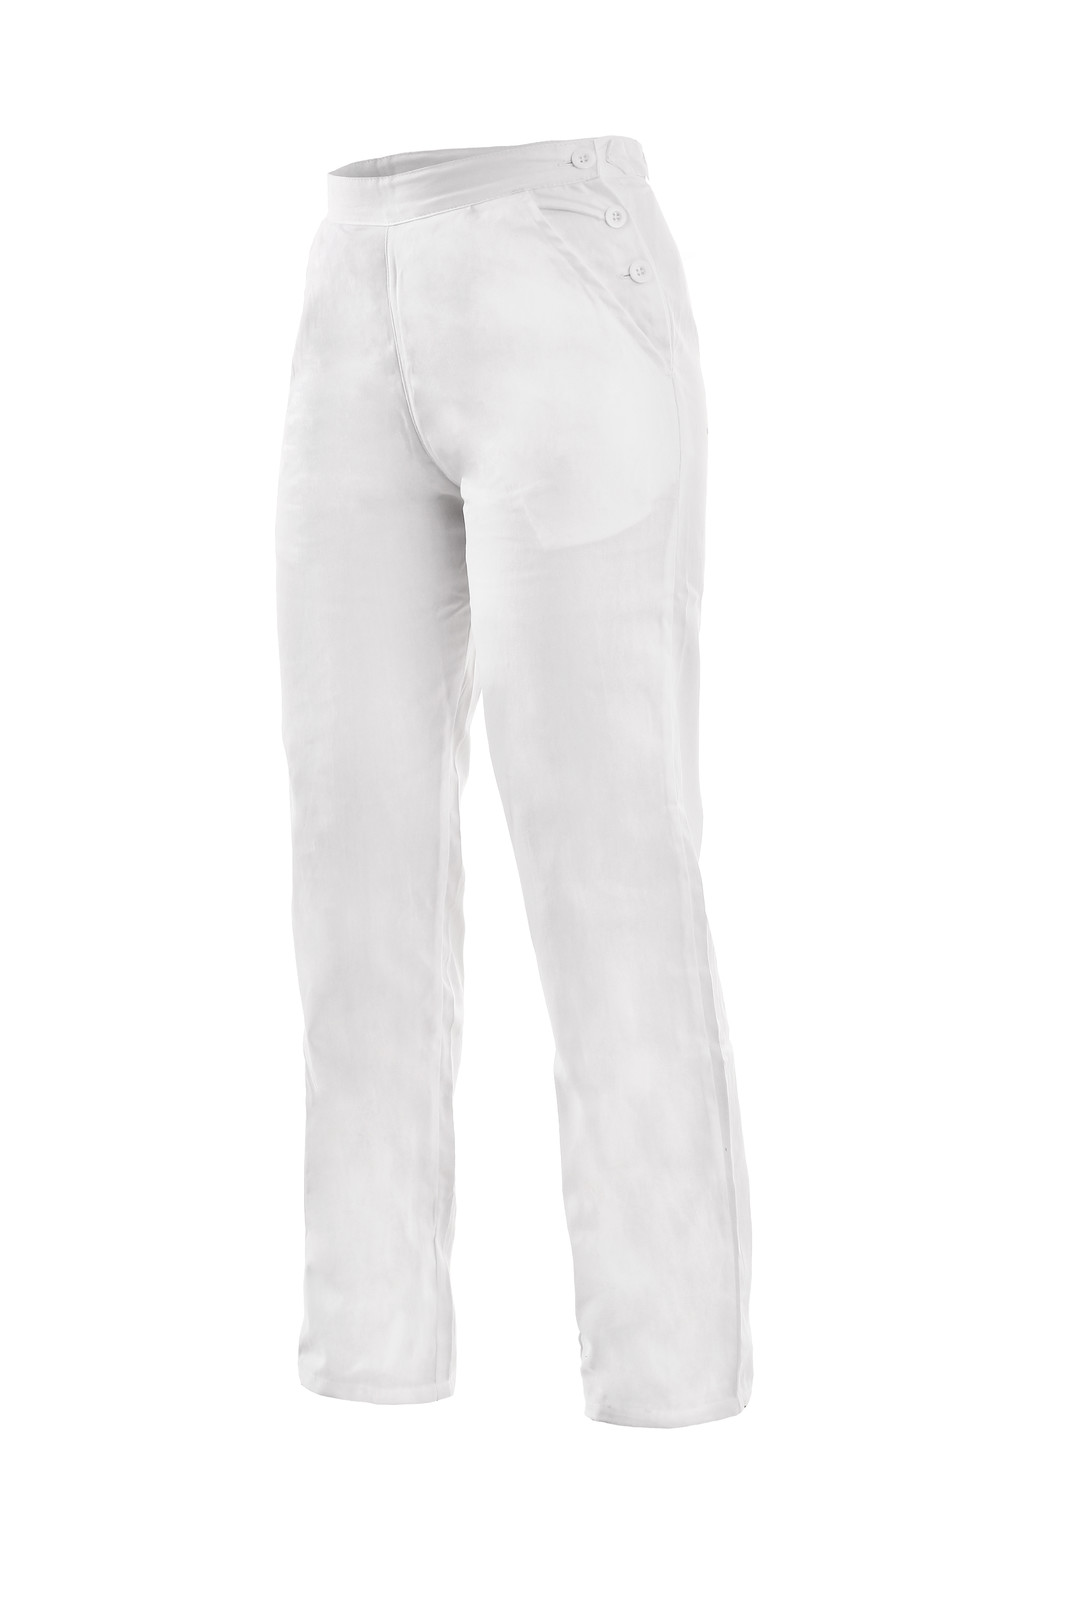 Dámske biele bavlnené nohavice Darja - veľkosť: 36, farba: biela